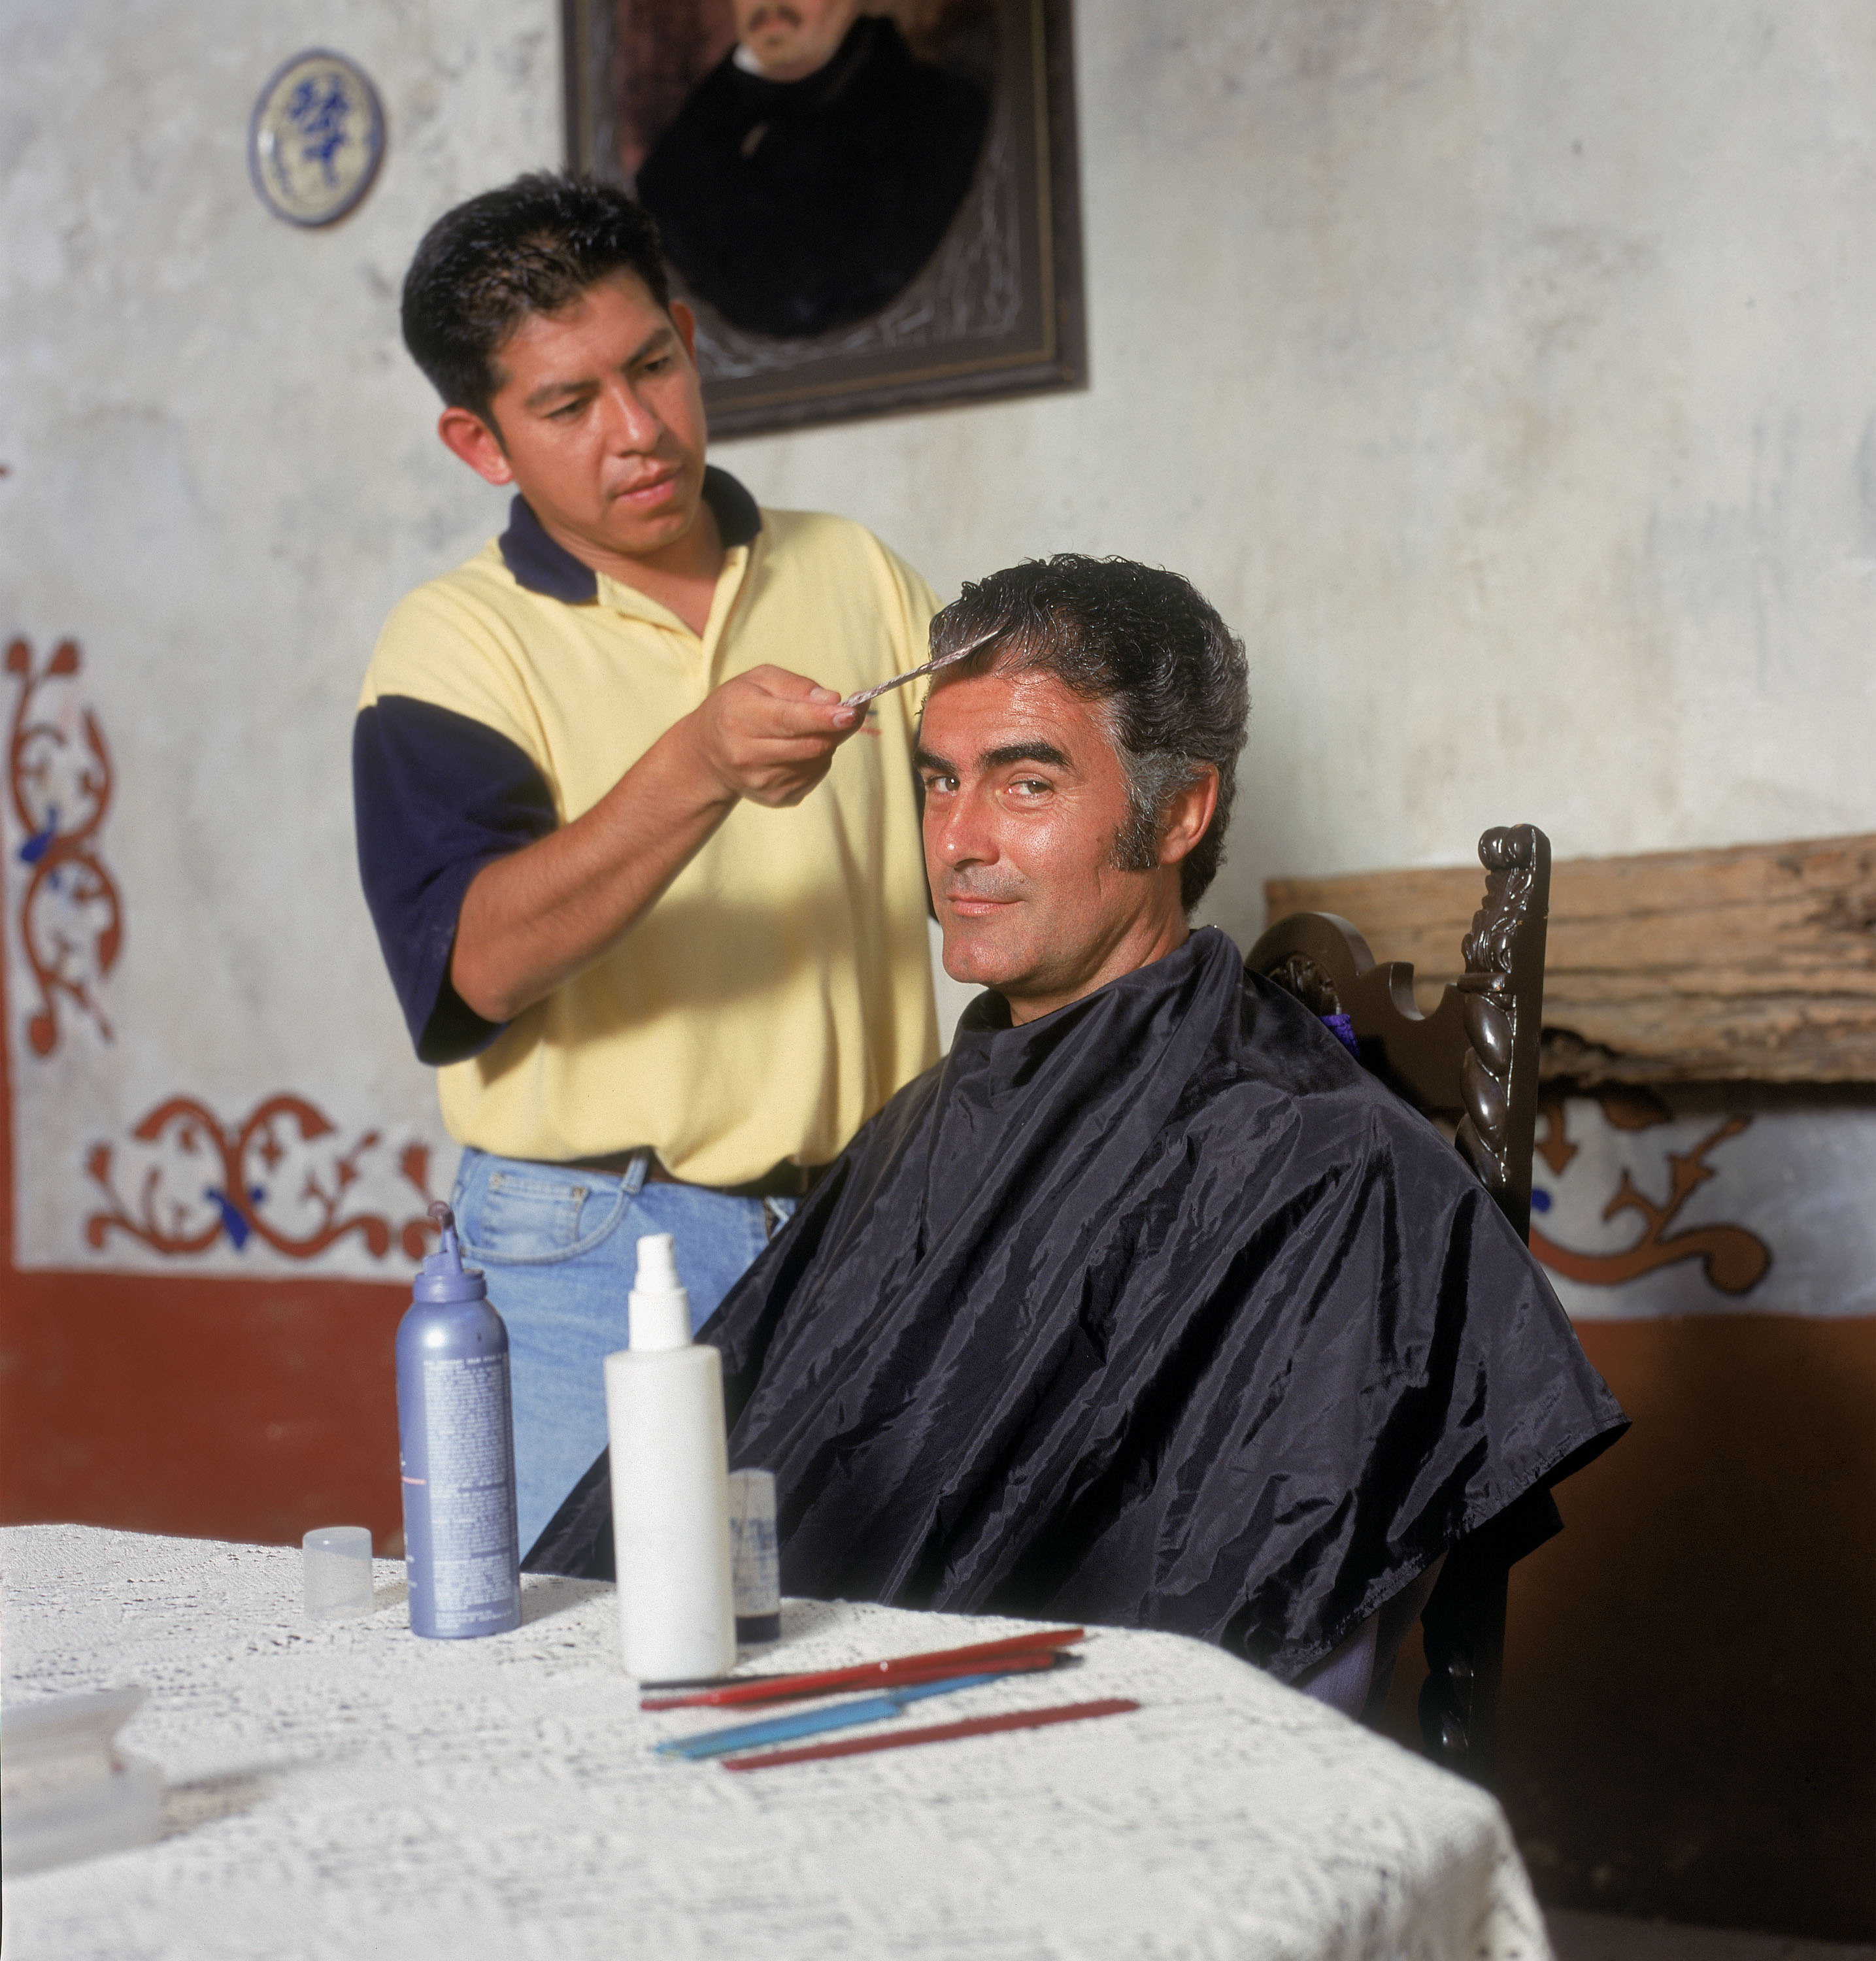 Saúl Lisazo se tiñe el pelo para interpretarse a sí mismo 20 años más joven en "El Derecho de Nacer", en agosto del 2000 en México || Fuente: Getty Images